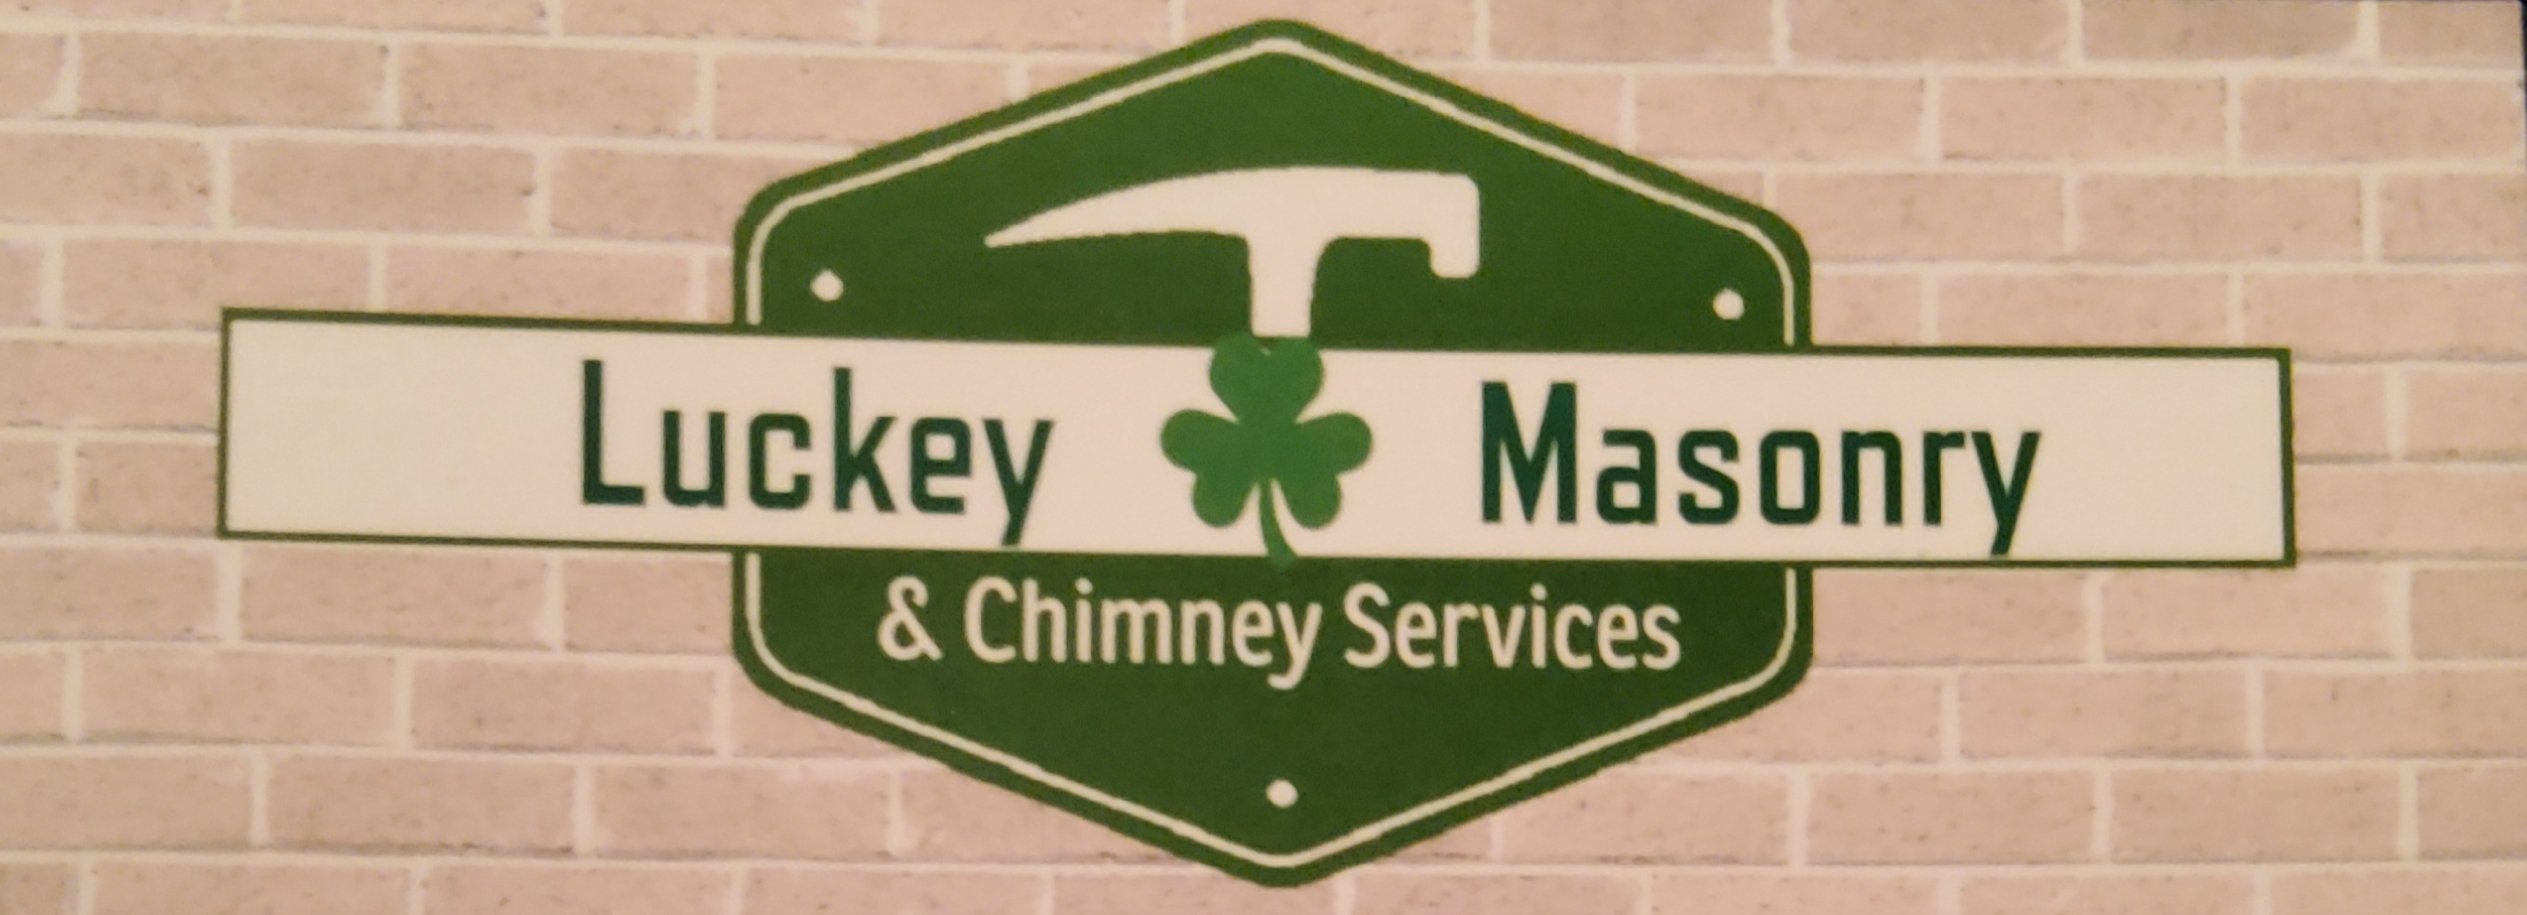 Luckey Masonry and Chimney Services Logo